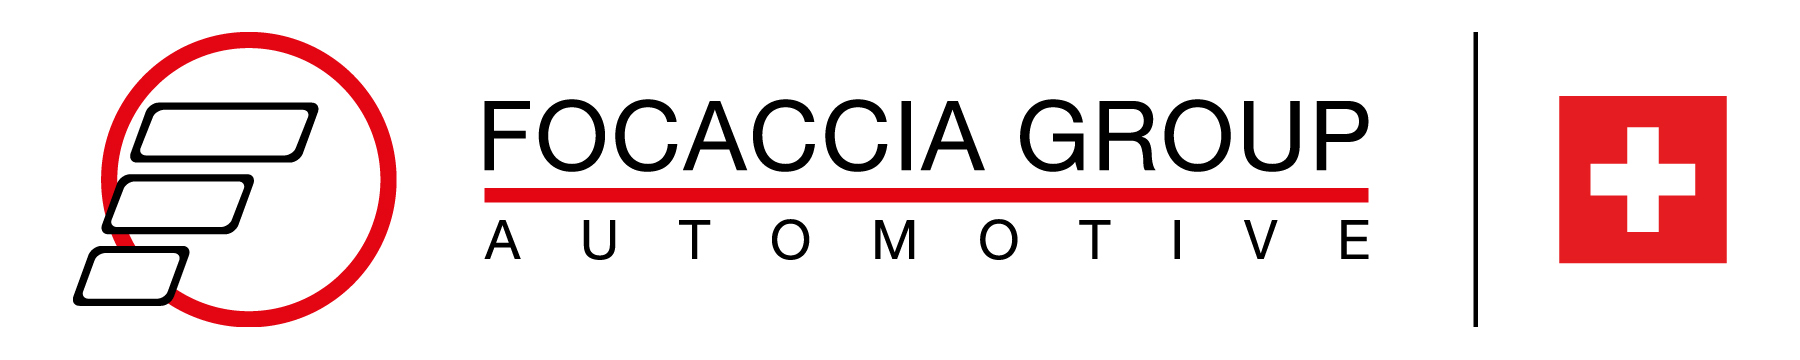 logo_Focaccia_Group